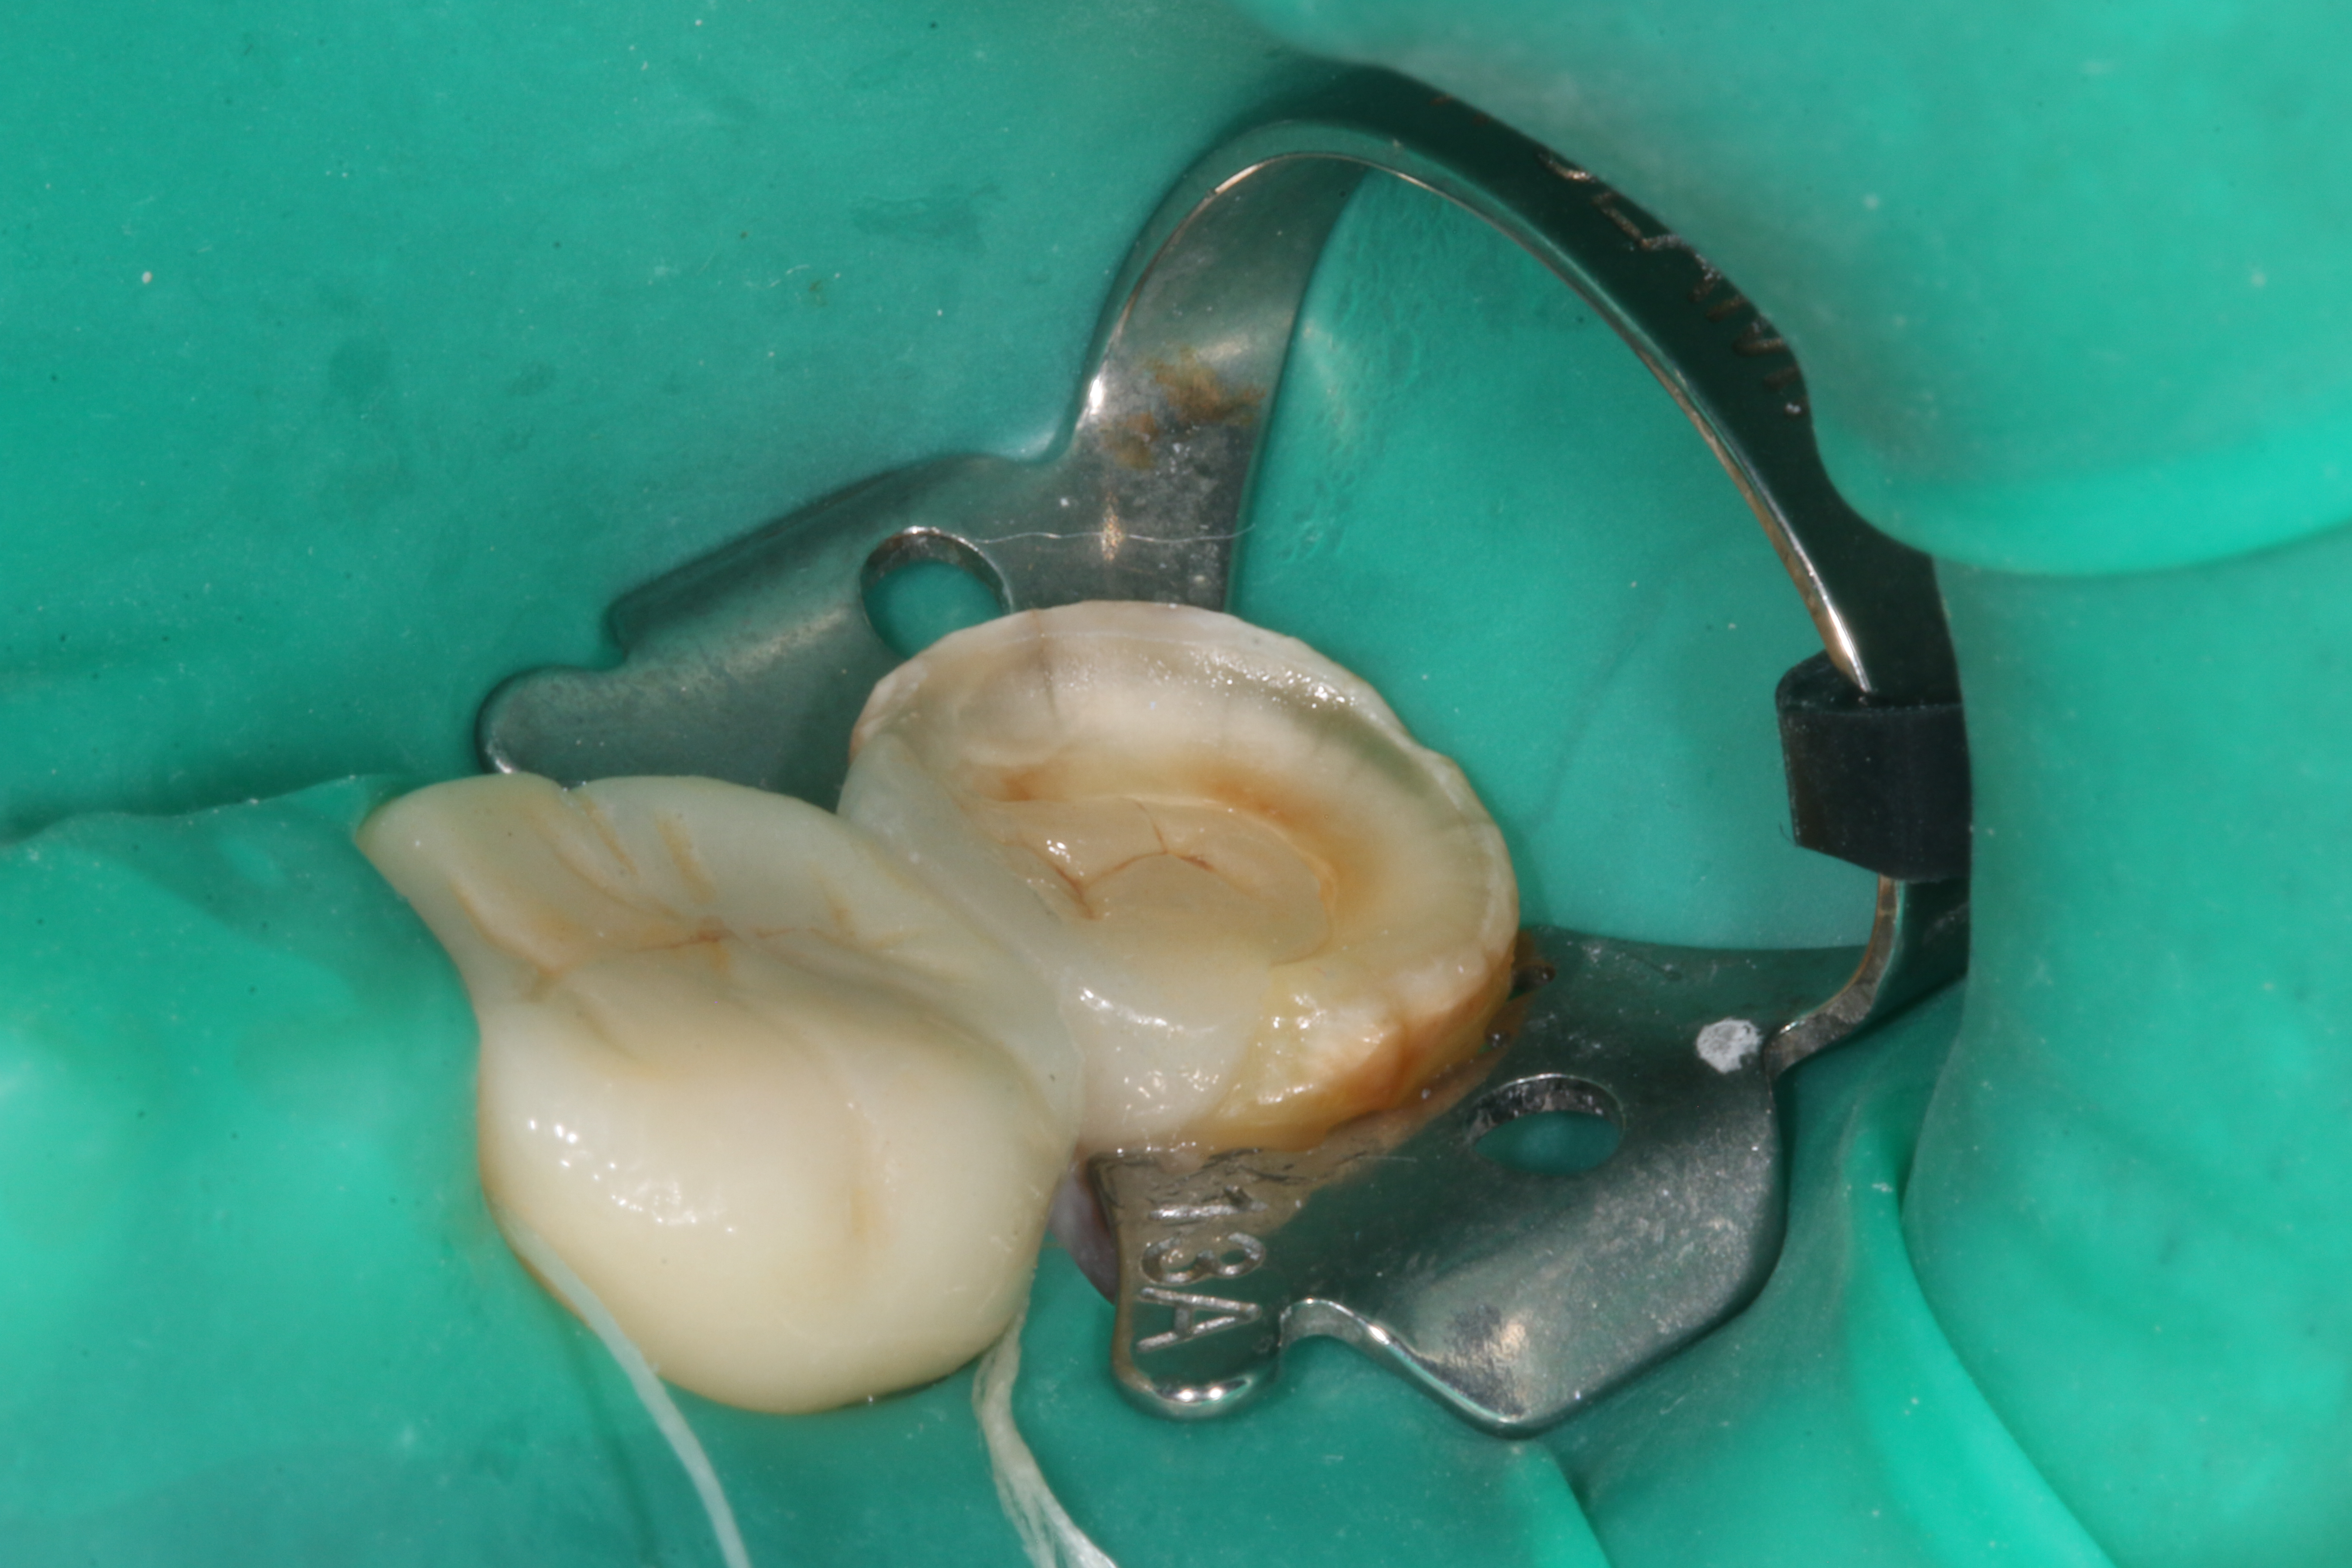 牙齿嵌体修复图片